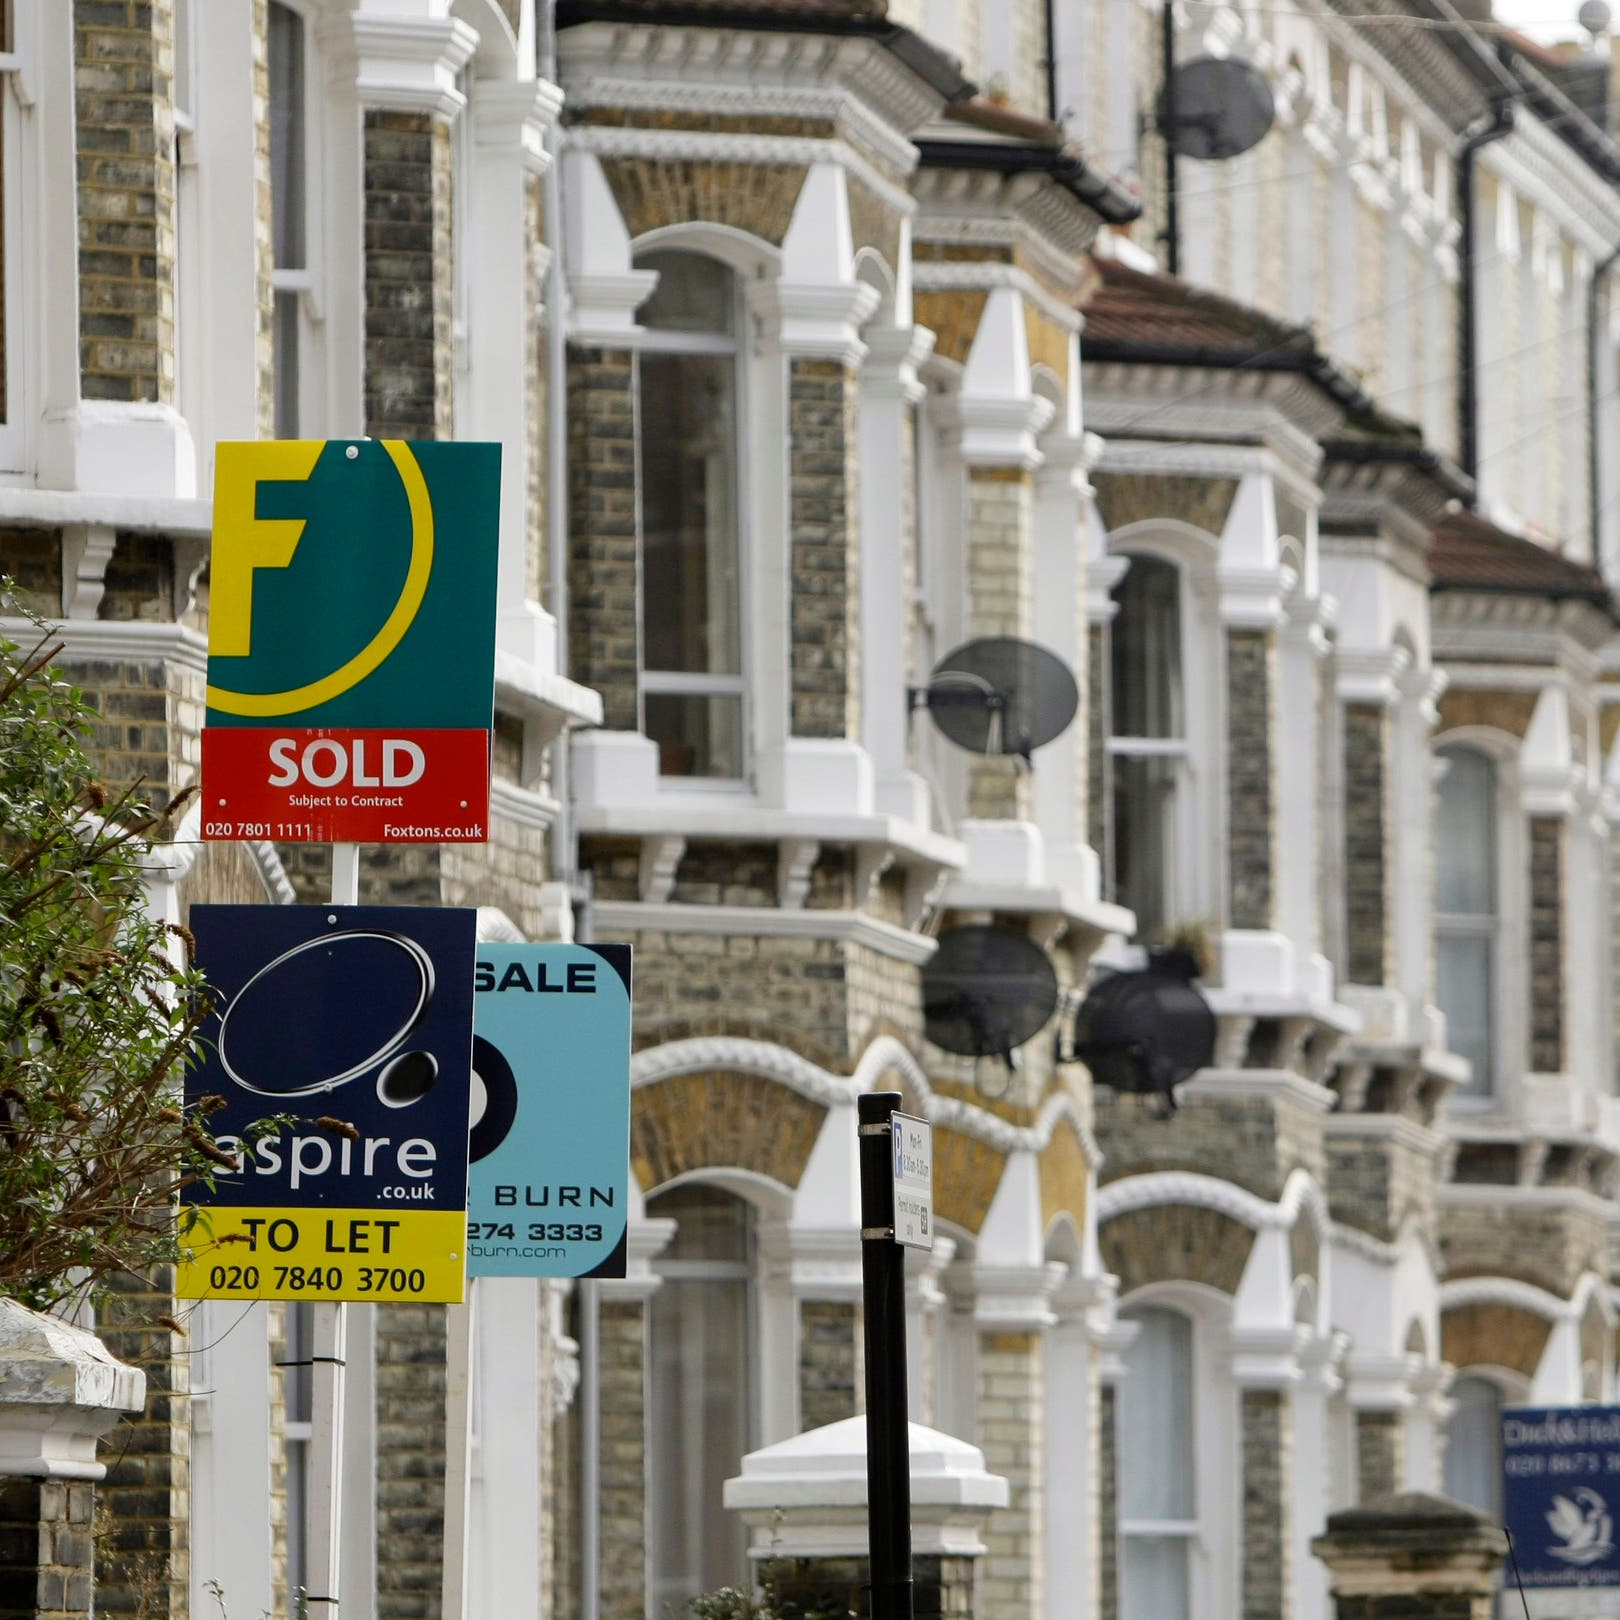 أكبر زيادة سنوية لأسعار المنازل البريطانية في 4 سنوات